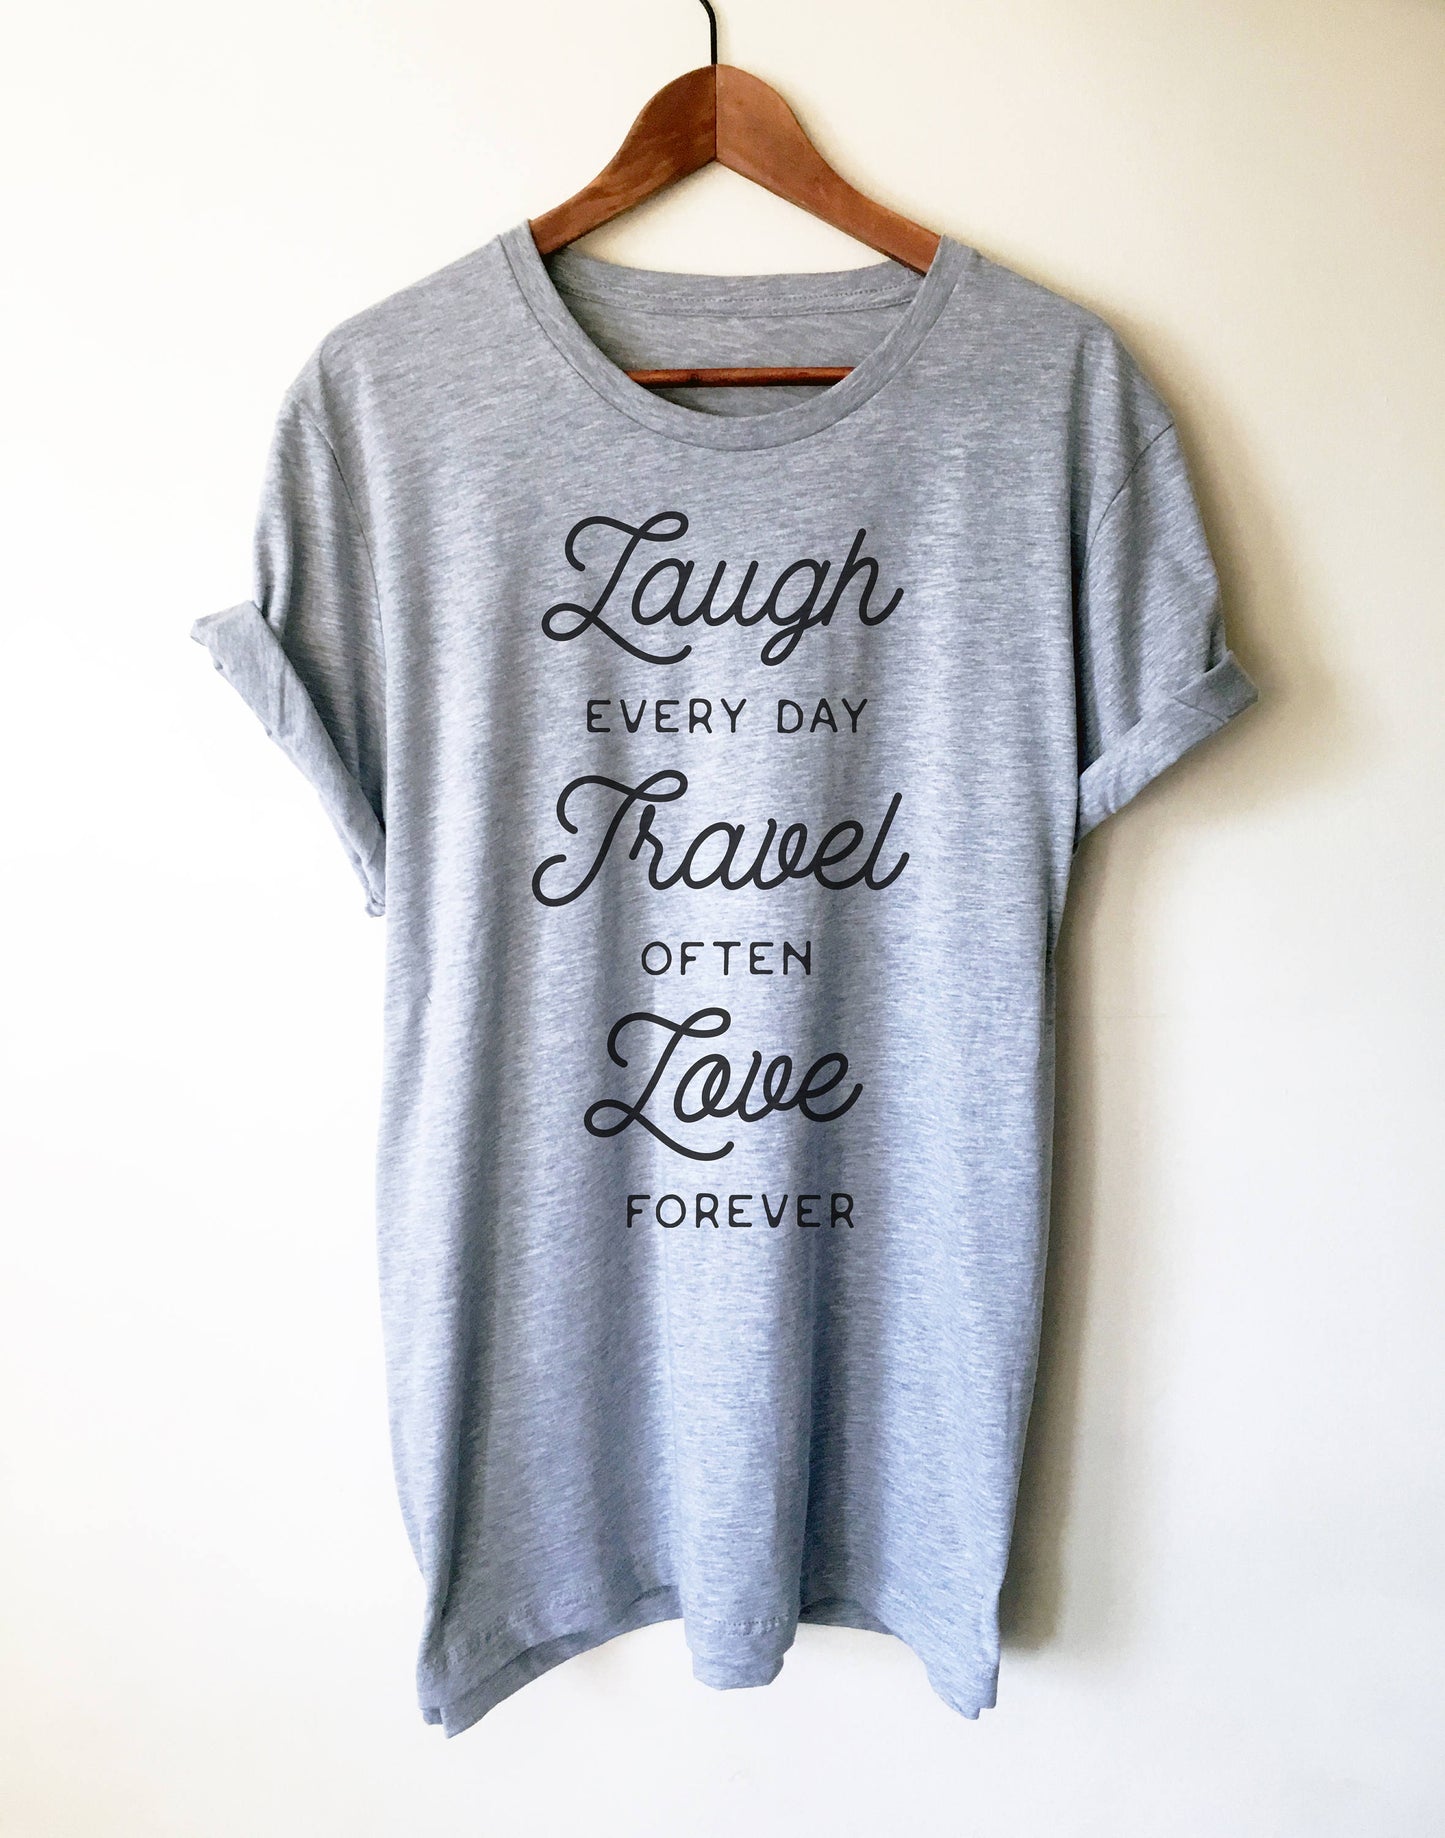 Laugh Every Day, Travel Often, Love Forever Unisex Shirt - Travel shirt, Adventure shirt, wanderlust shirt, camping shirt, wanderlust